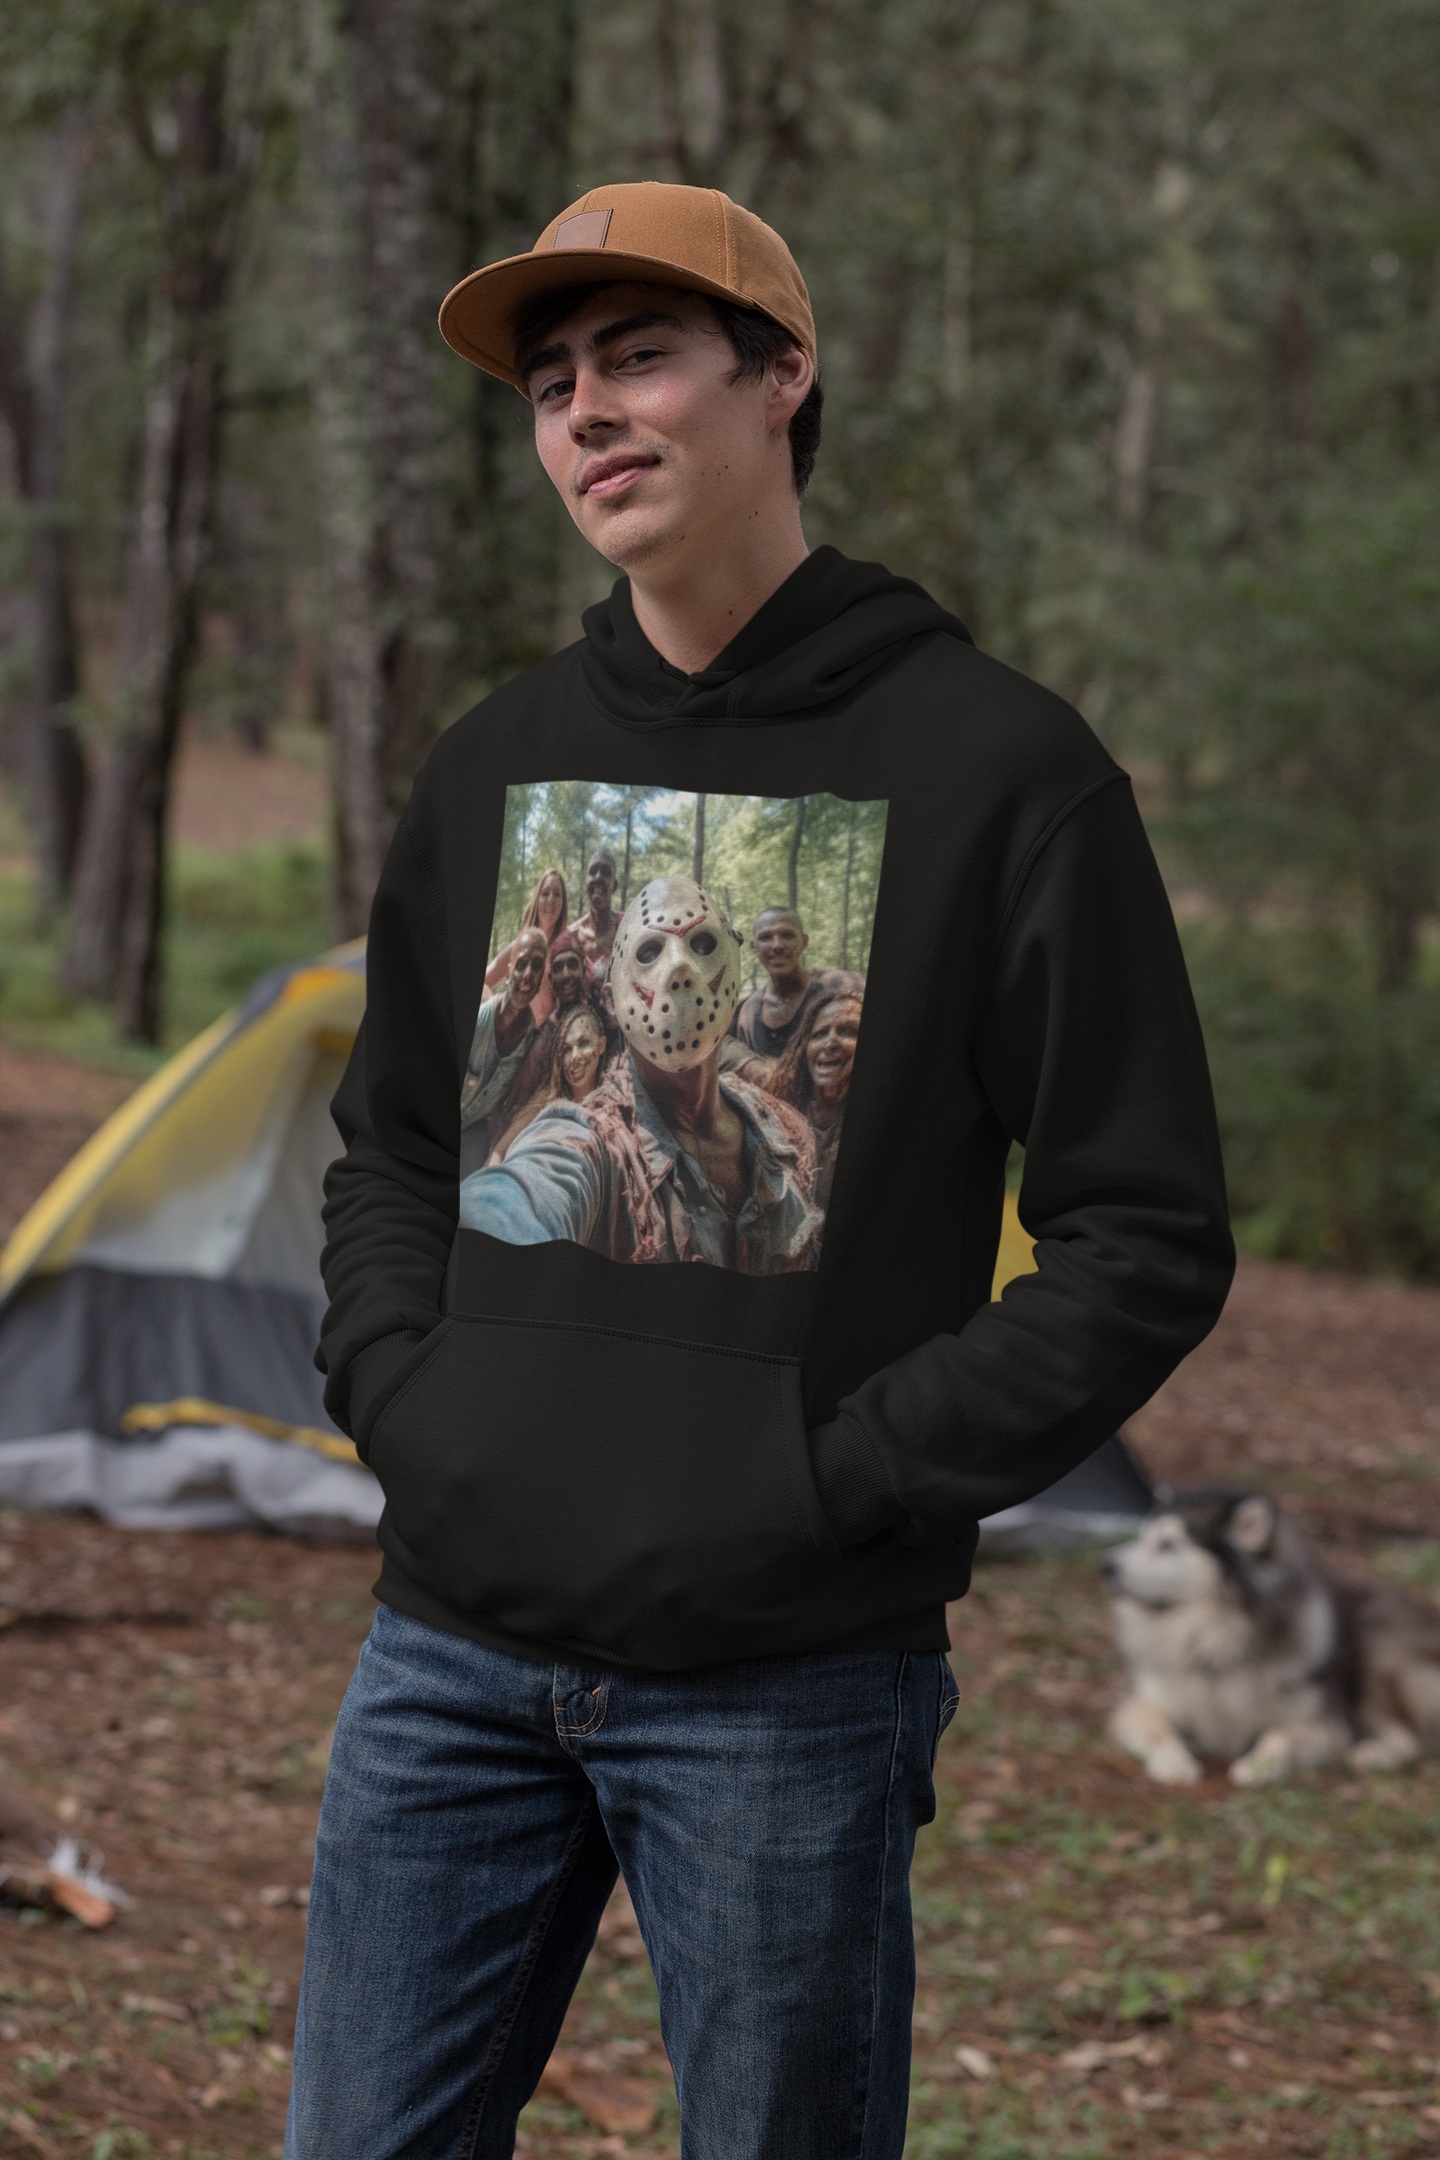 Jason Selfie with Campers Unisex Heavy Blend™ Hooded Sweatshirt